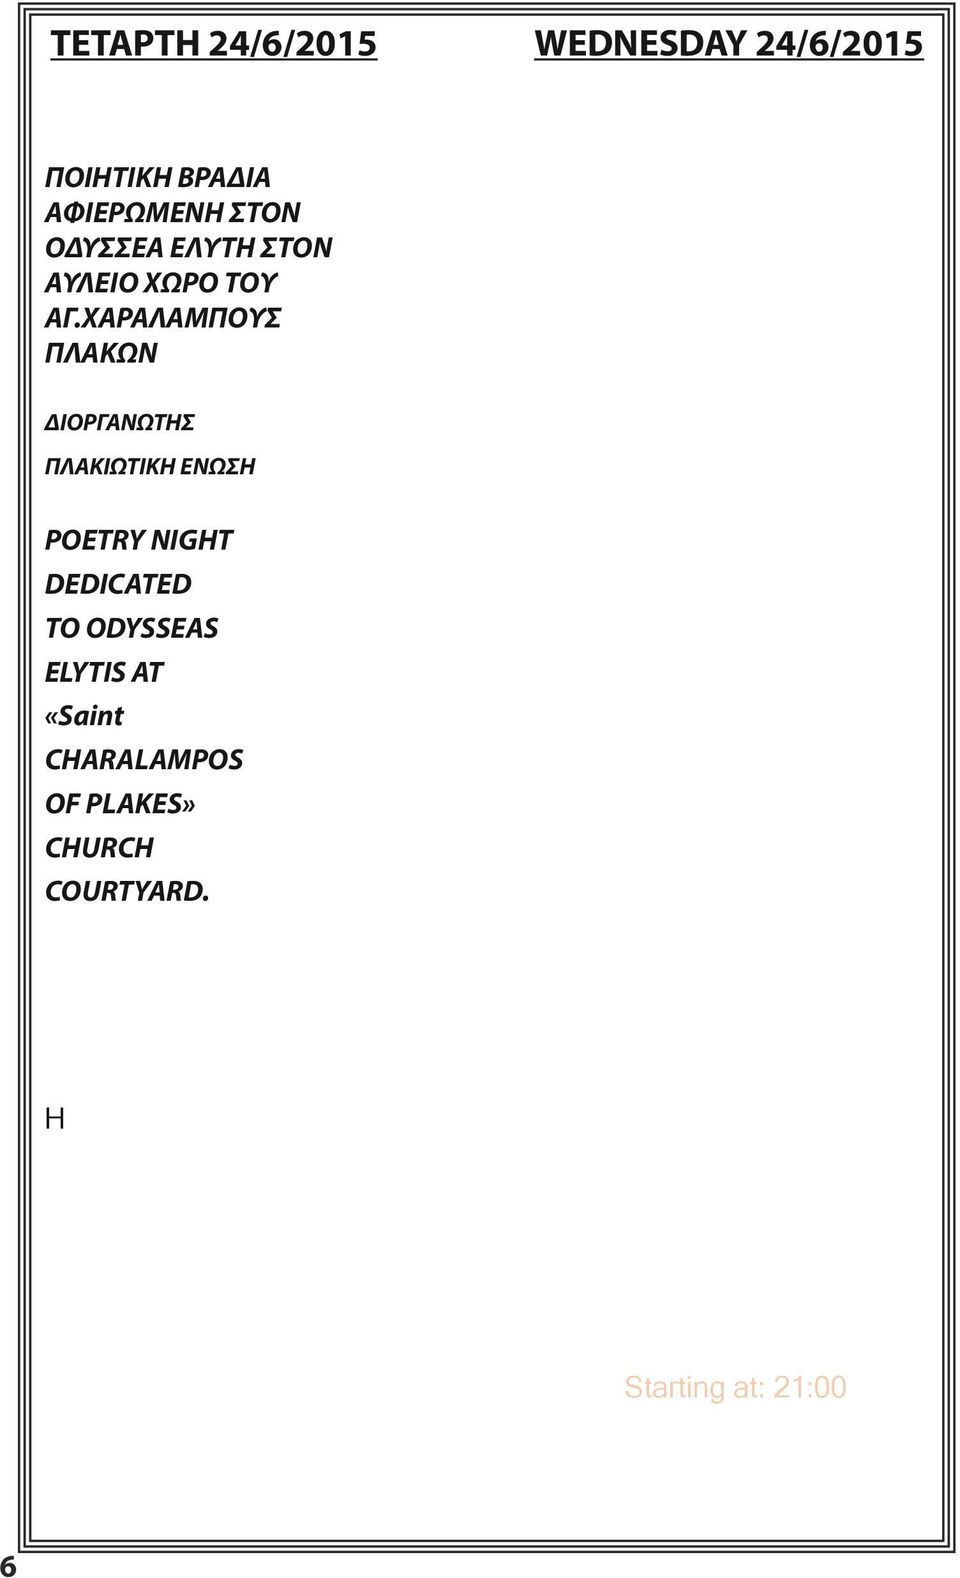 Η Πλακιώτικη ένωση, ο πολιτιστικός σύλλογος στις Πλάκες Μήλου, διοργανώνει την ποιητική βραδιά που αυτή τη χρονιά θα είναι αφιερωμένη στον Οδυσσέα